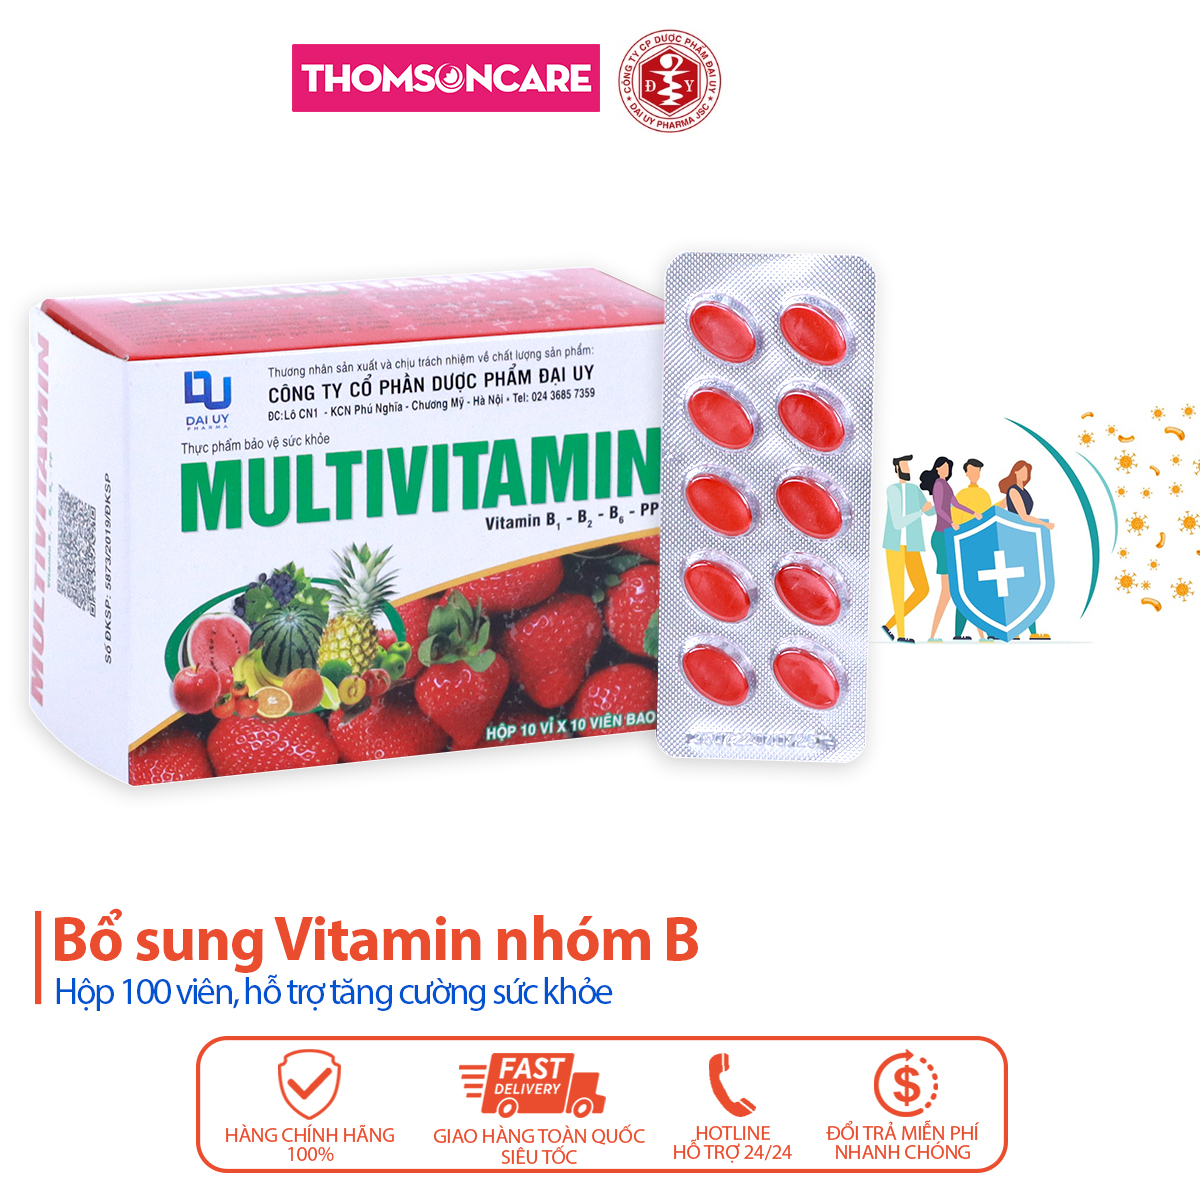 Vitamin tổng hợp Multivitamin B1 B2 B6 PP dành cho người gầy yếu, mệt mỏi, kém ăn - Hộp 100 viên đ.y - Thomsoncare